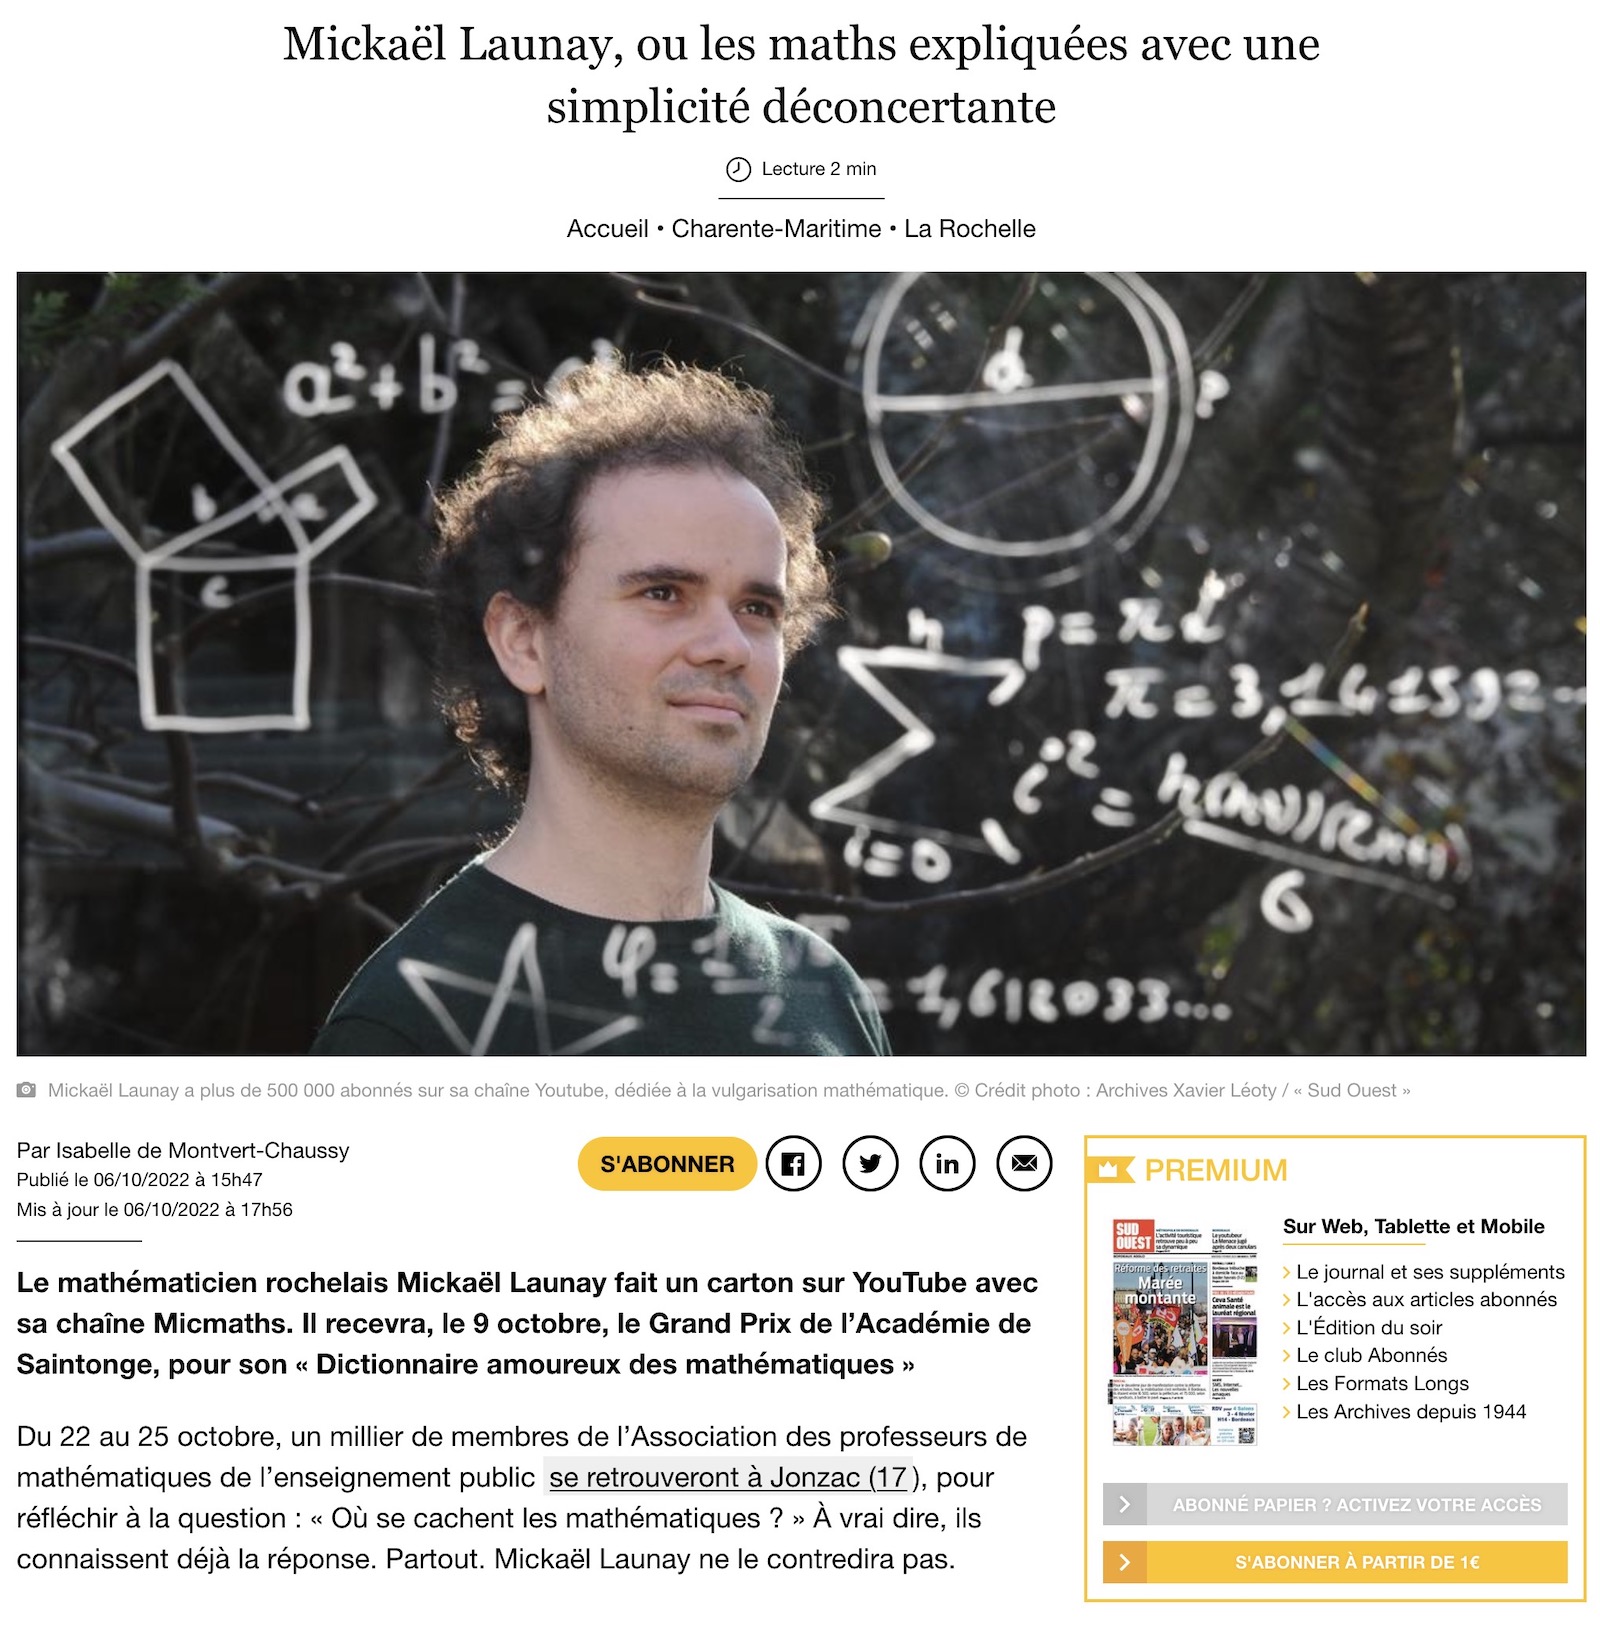 Sud-Ouest, 06/10/2022 : Mickaël Launay, ou les maths expliquées avec une simplicité déconcertante